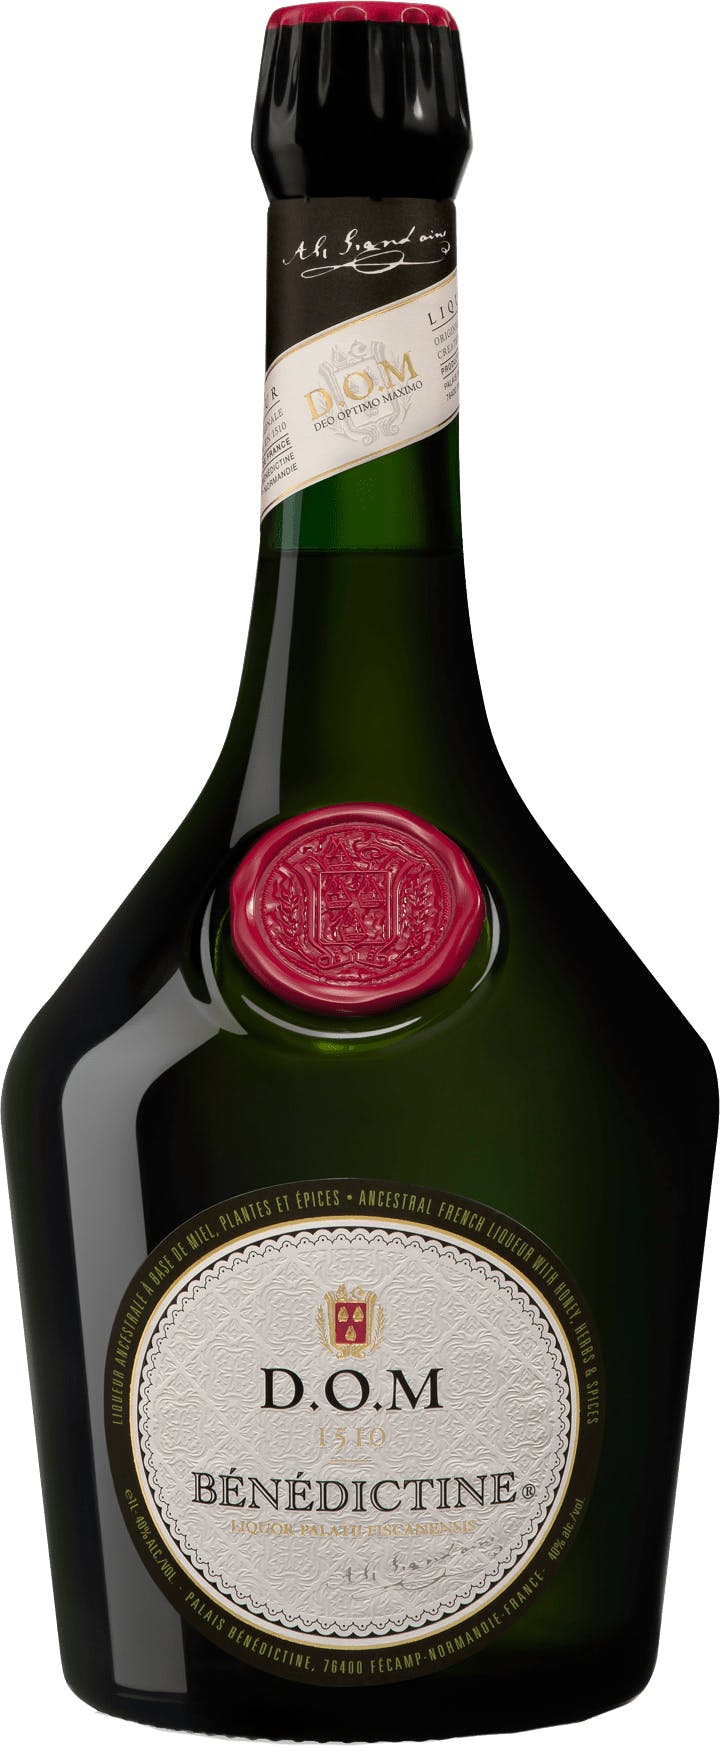 Bénédictine D. O. M . Liqueur 750ml - Vine Republic